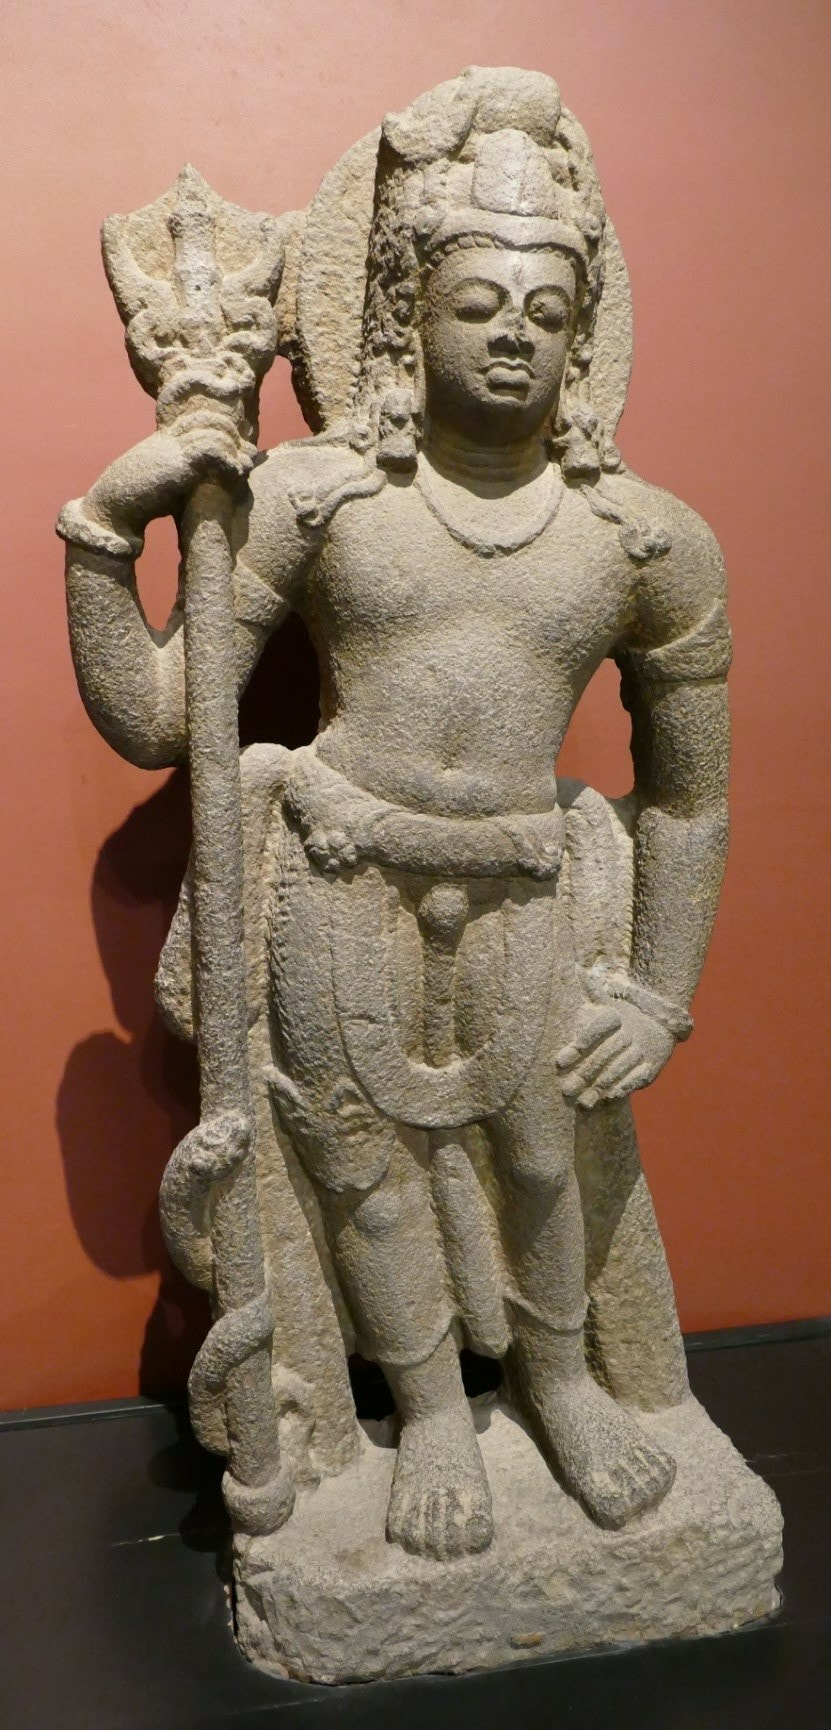 Shiva aus Parel (Mumbai) 6.Jh.n.Chr.